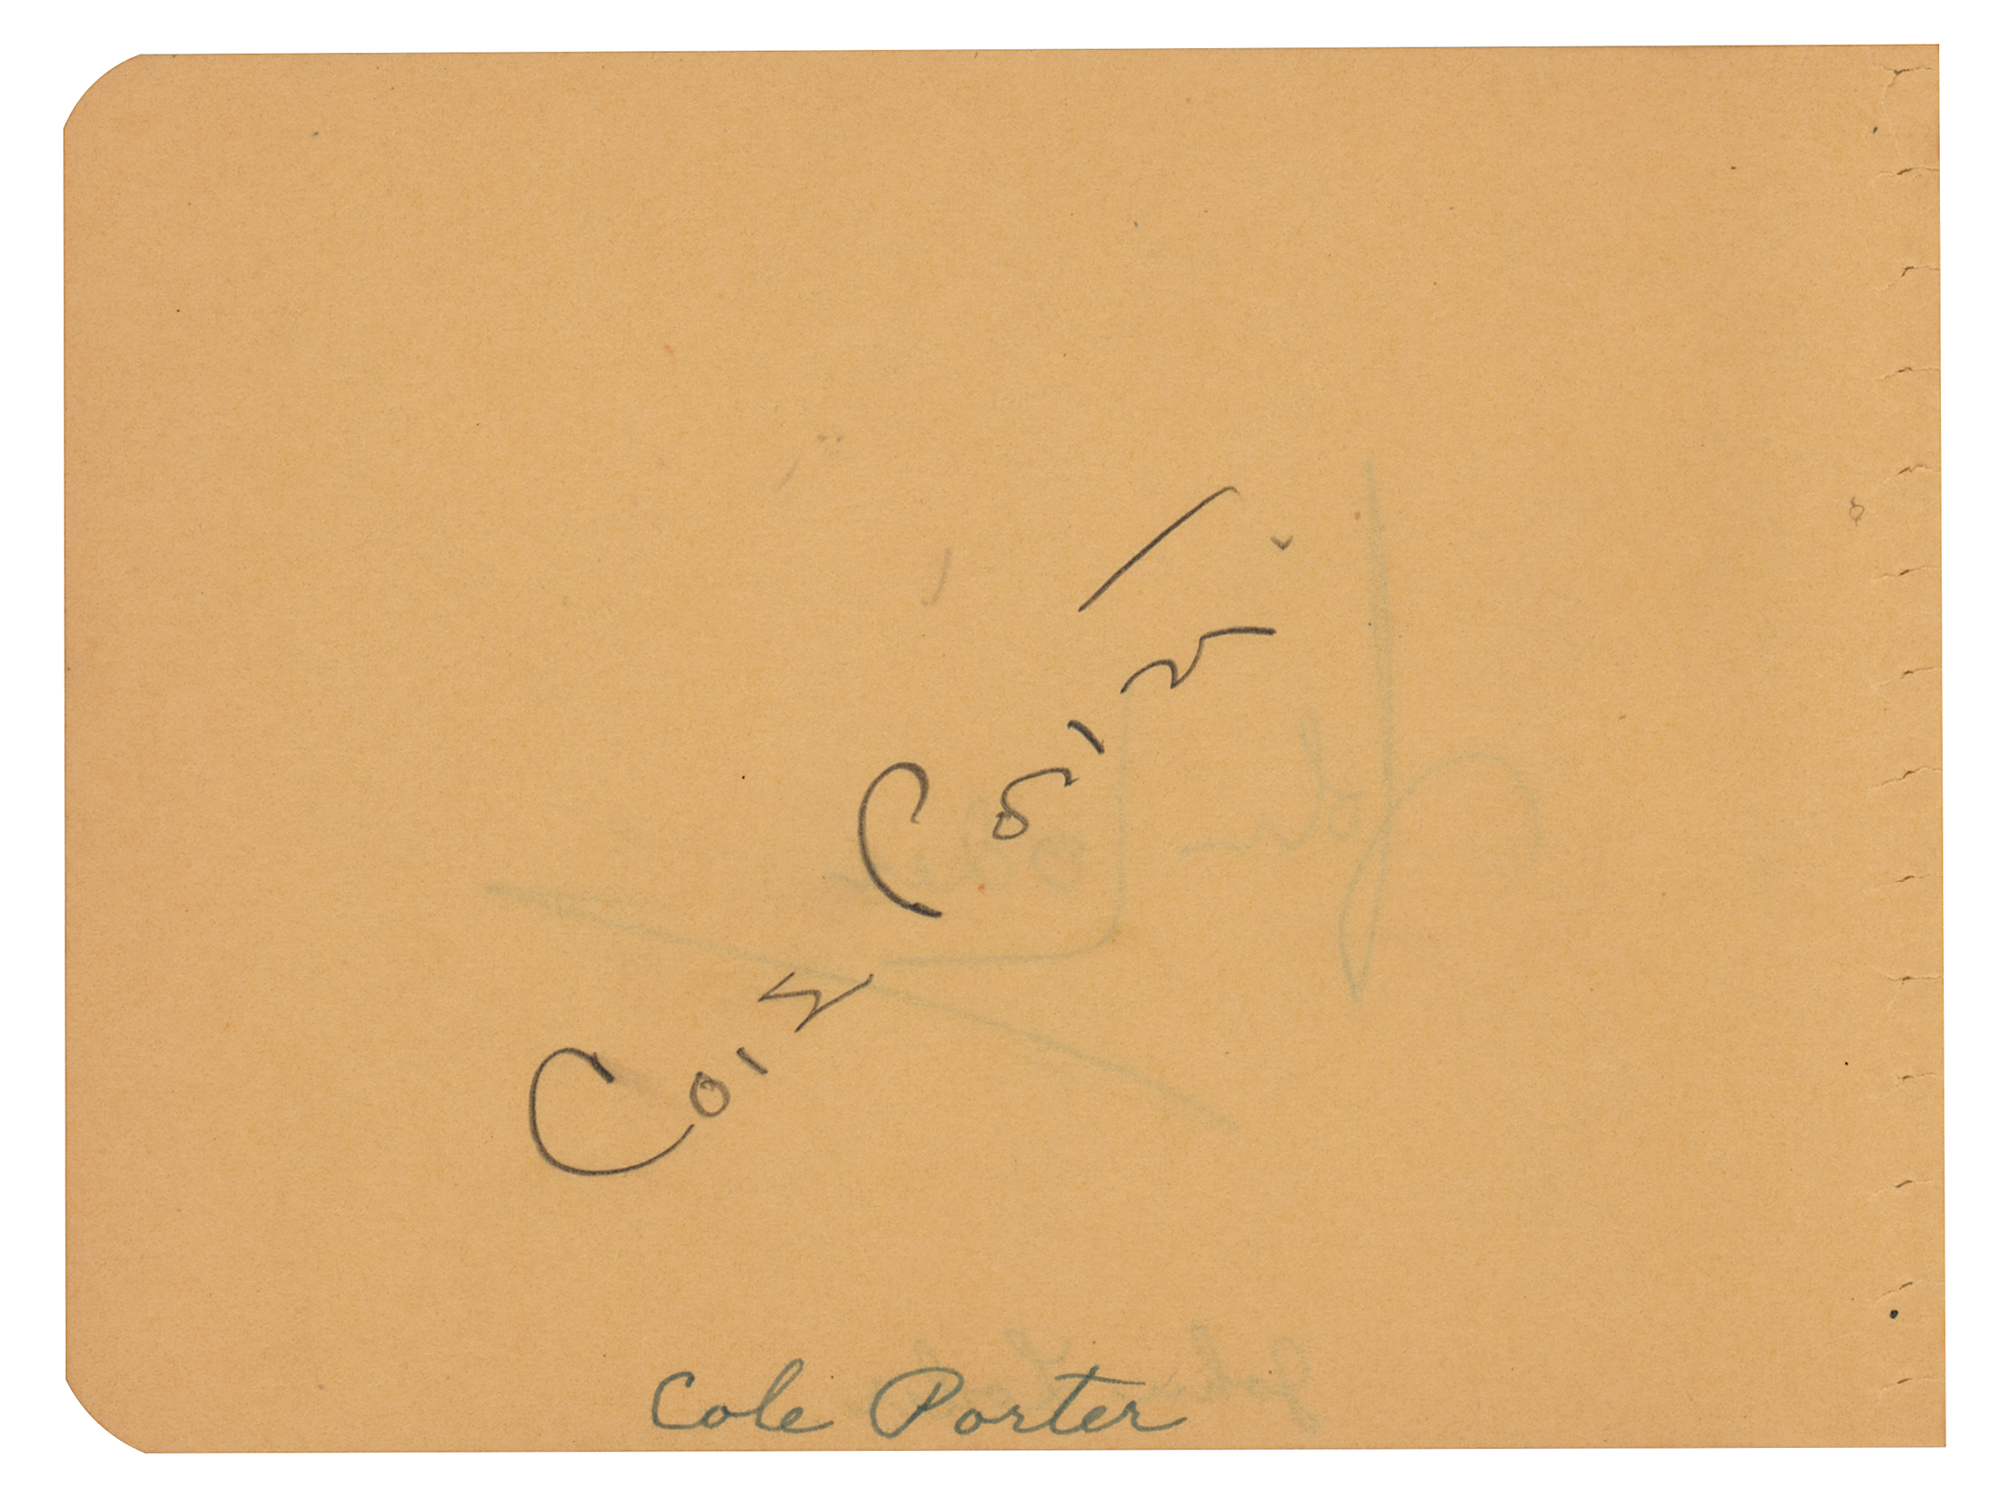 Lot #586 Cole Porter Signature